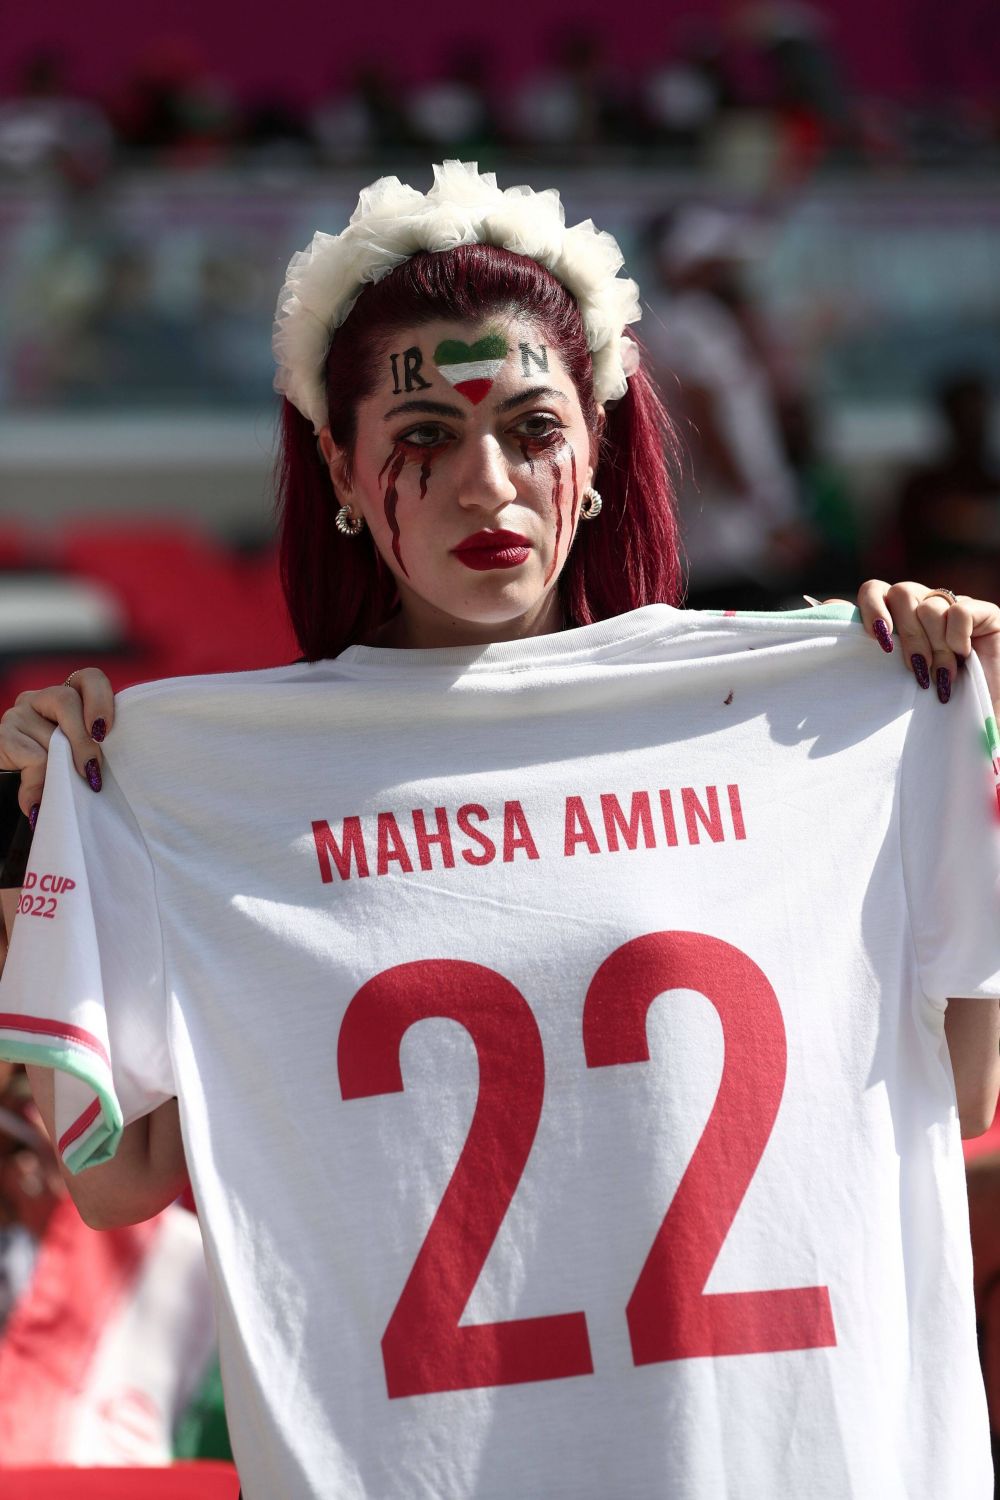 Imaginea înduioșătoare de la Cupa Mondială pe care jurnalistul Amir Kiarash a comentat-o în direct la Pro Arena_8